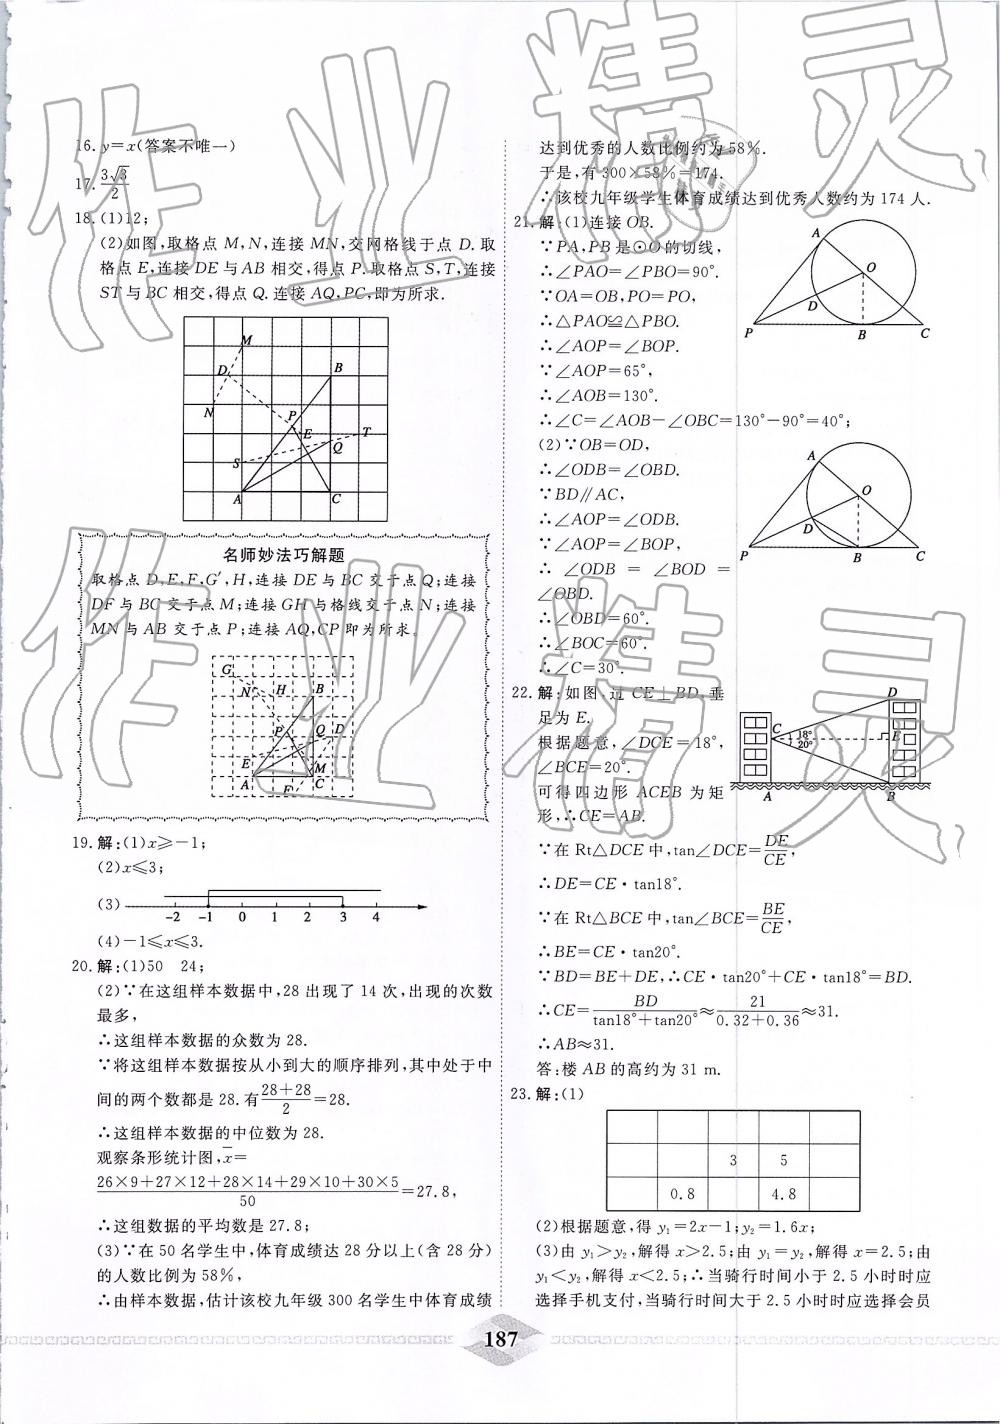 2019年一飞冲天中考模拟试题汇编数学 第27页